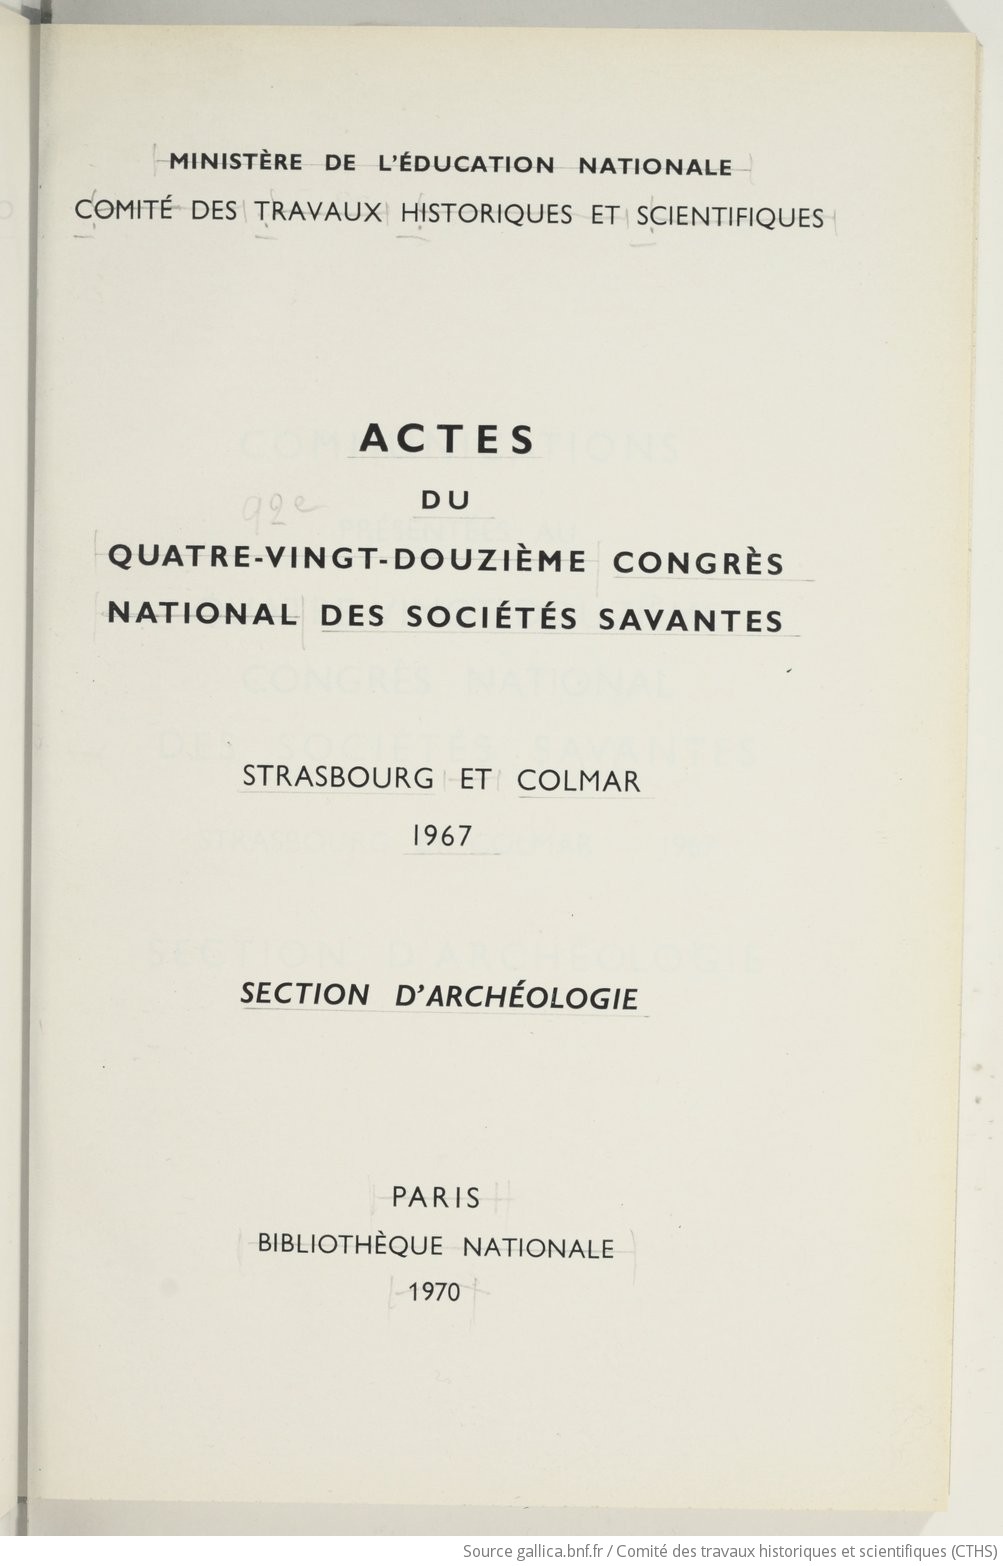 Actes du quatre-vingt-douzième Congrès national des sociétés savantes, Strasbourg et Colmar, 1967, Section d'archéologie